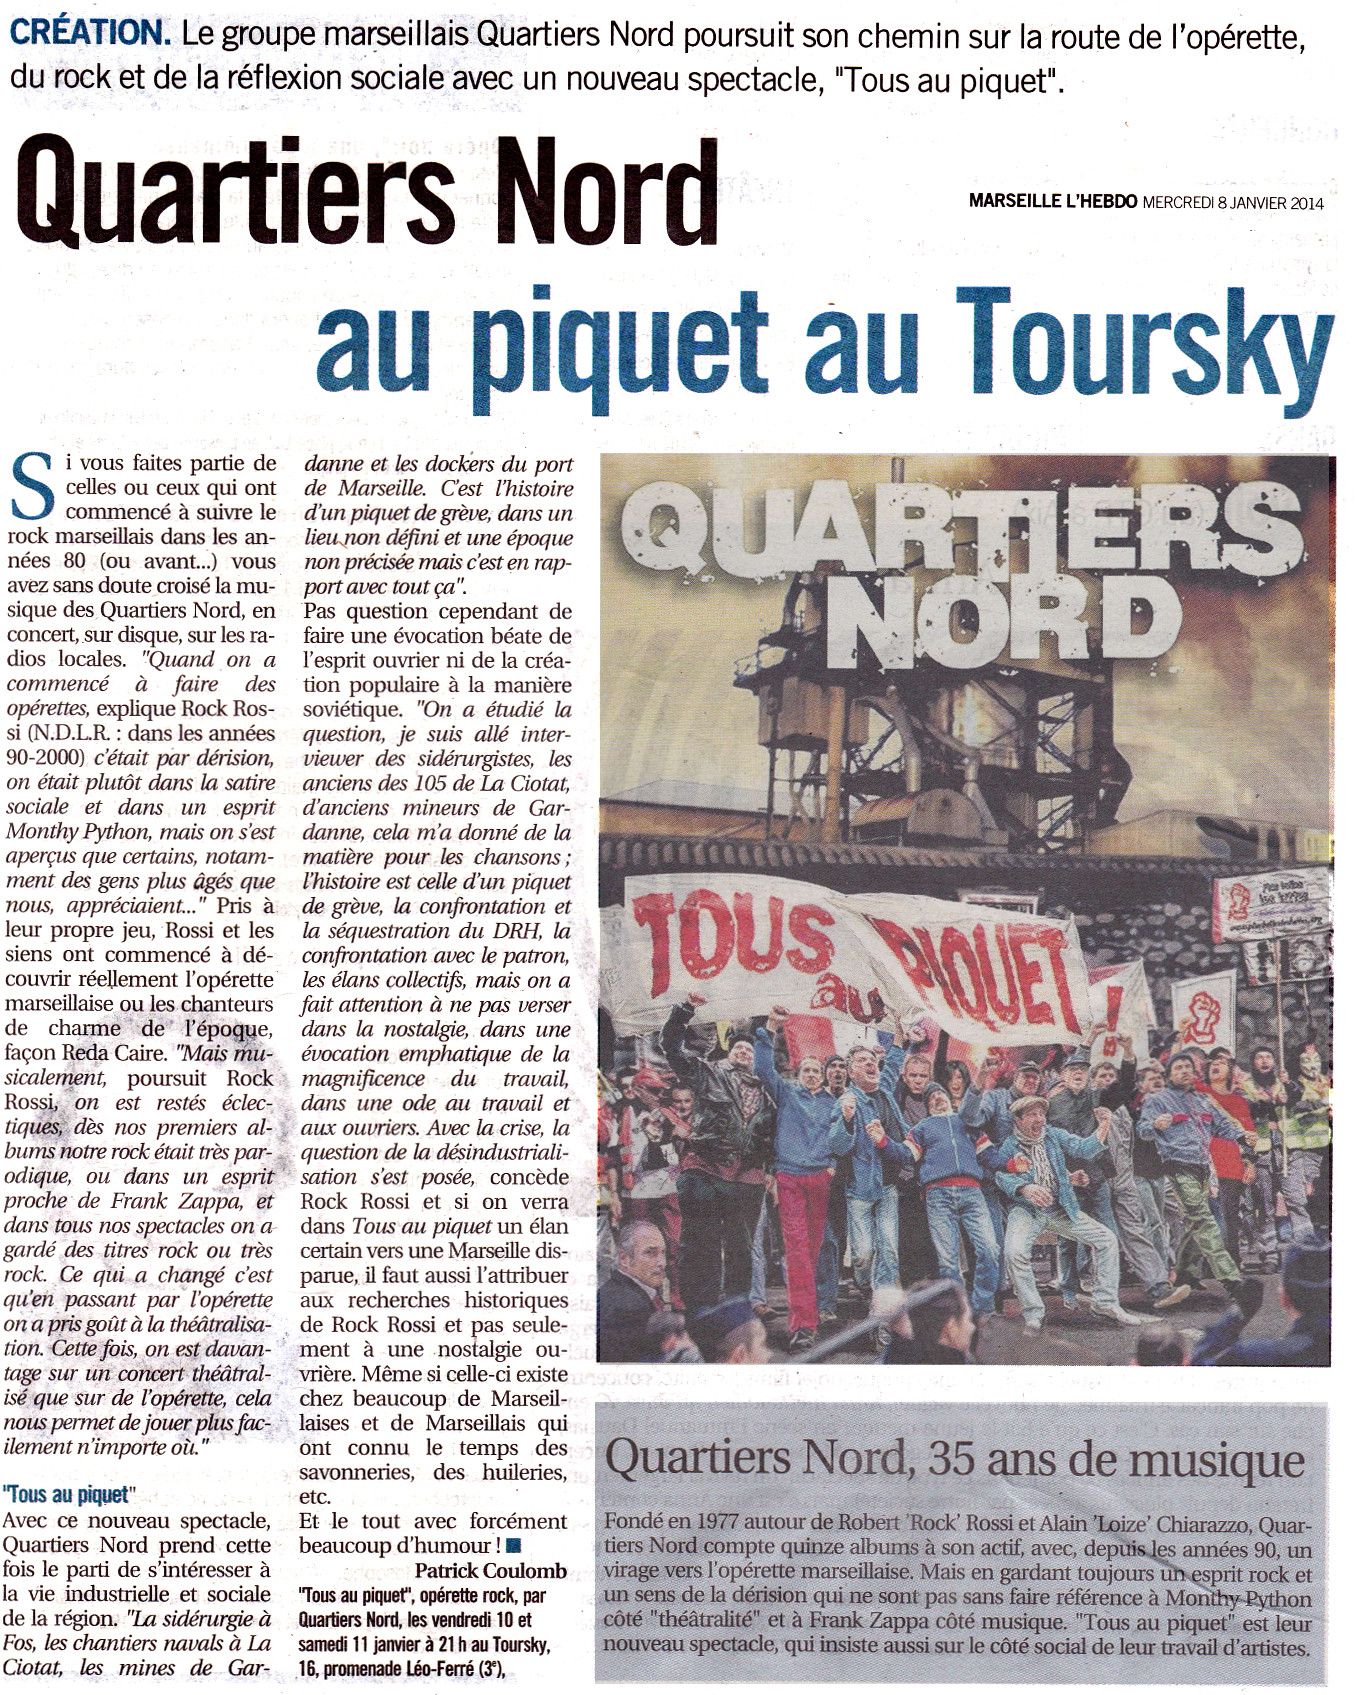 Quartiers Nord, spectacle Tous au piquet ! Presse, L'Hebdo 8 janvier 2014